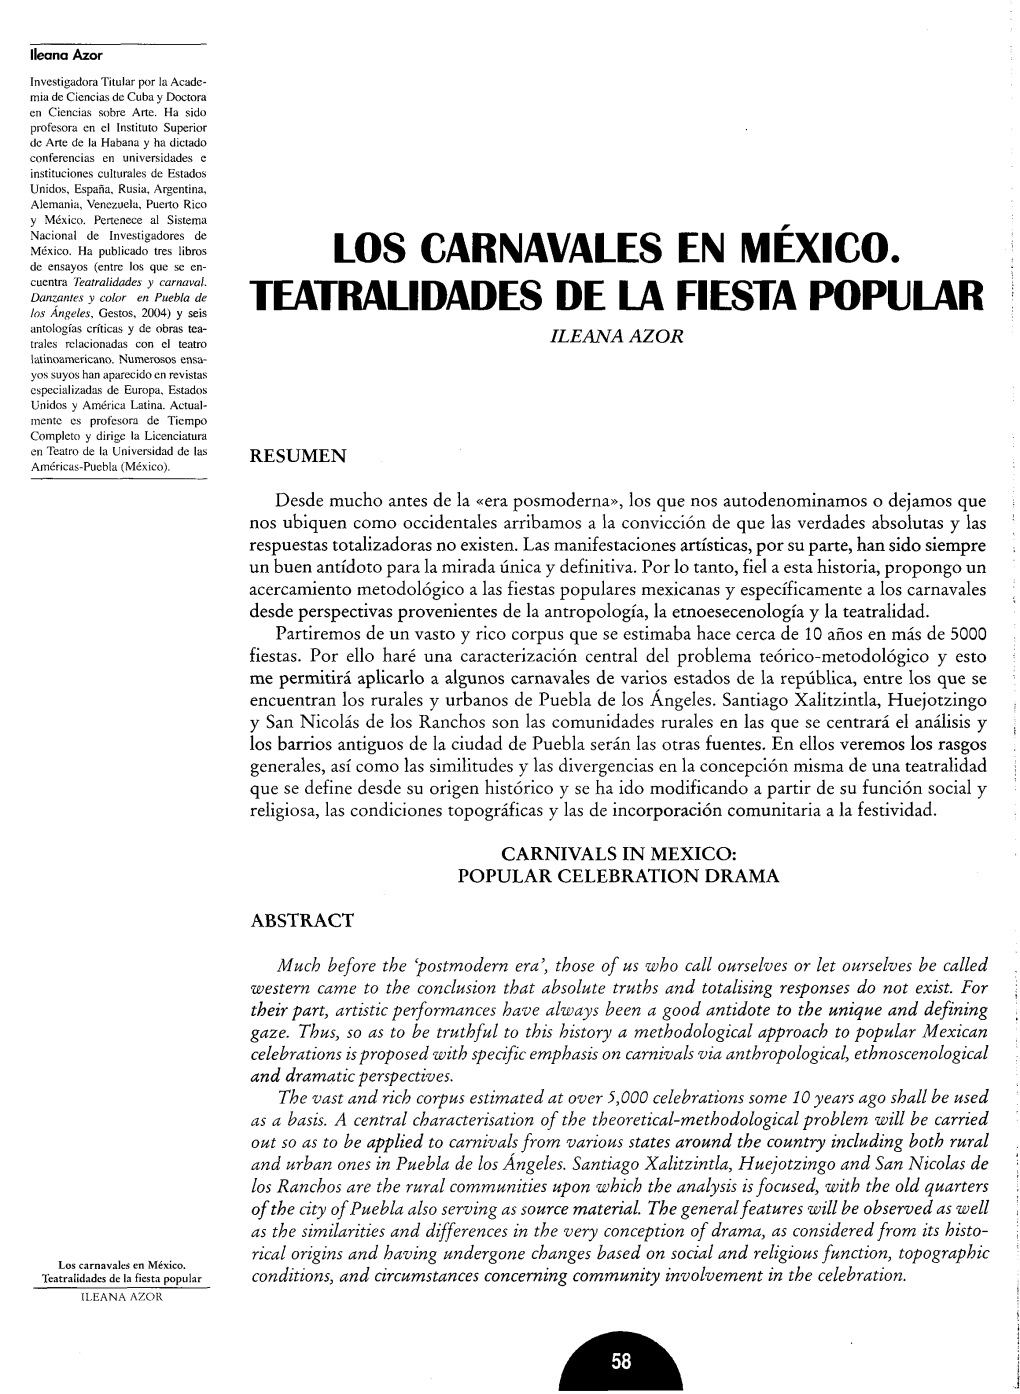 Los Carnavales En México. Teatralidades De La Fiesta Popular Conditions, and Circumstances Concerning Community Involvement in the Celebration